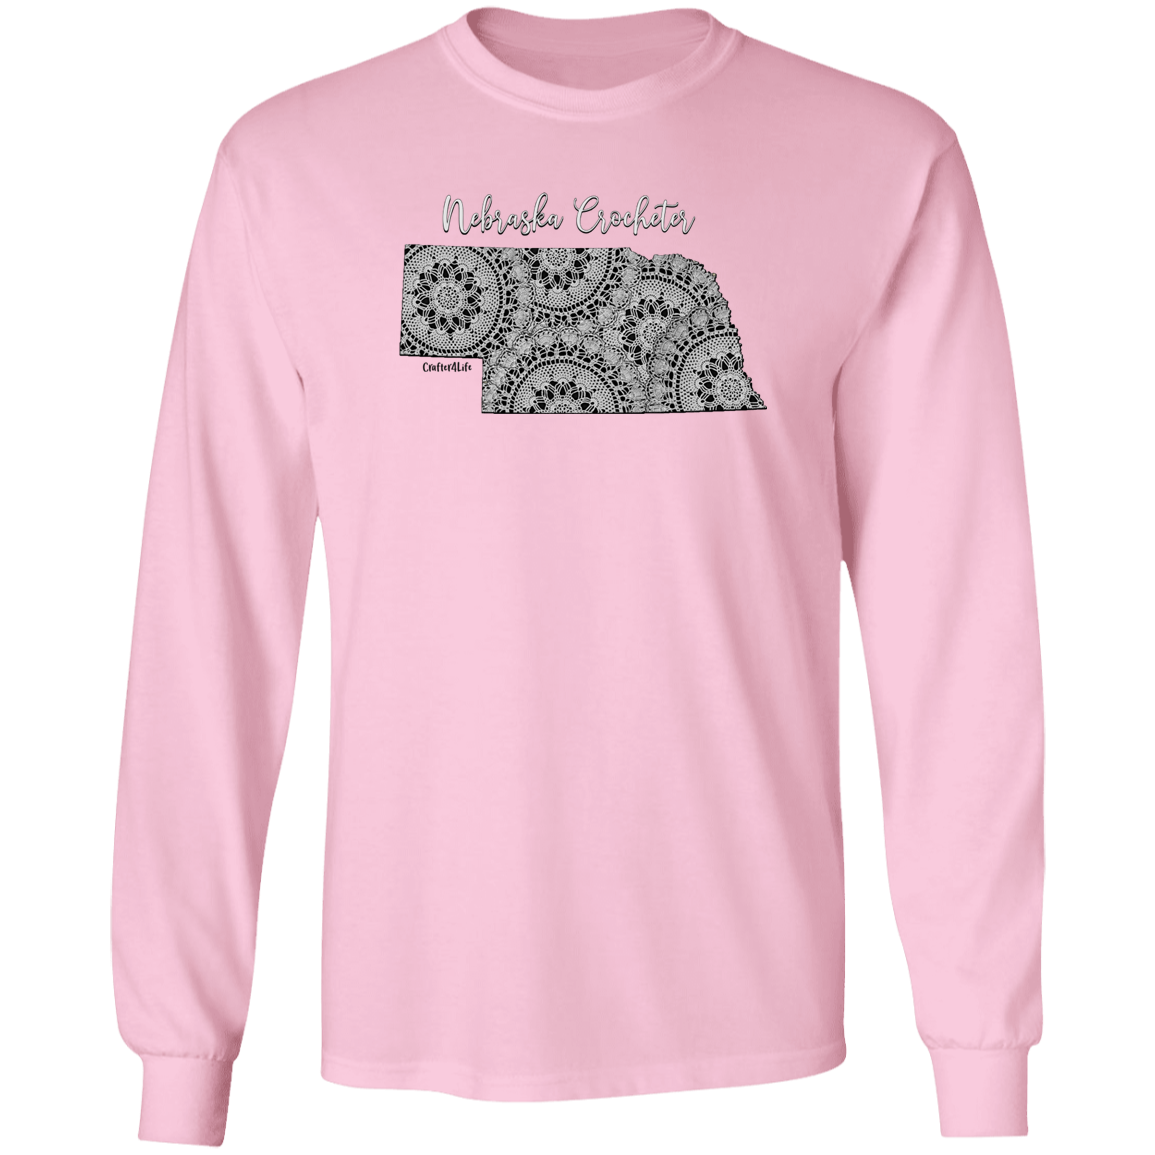 Nebraska Crocheter LS Ultra Cotton T-Shirt